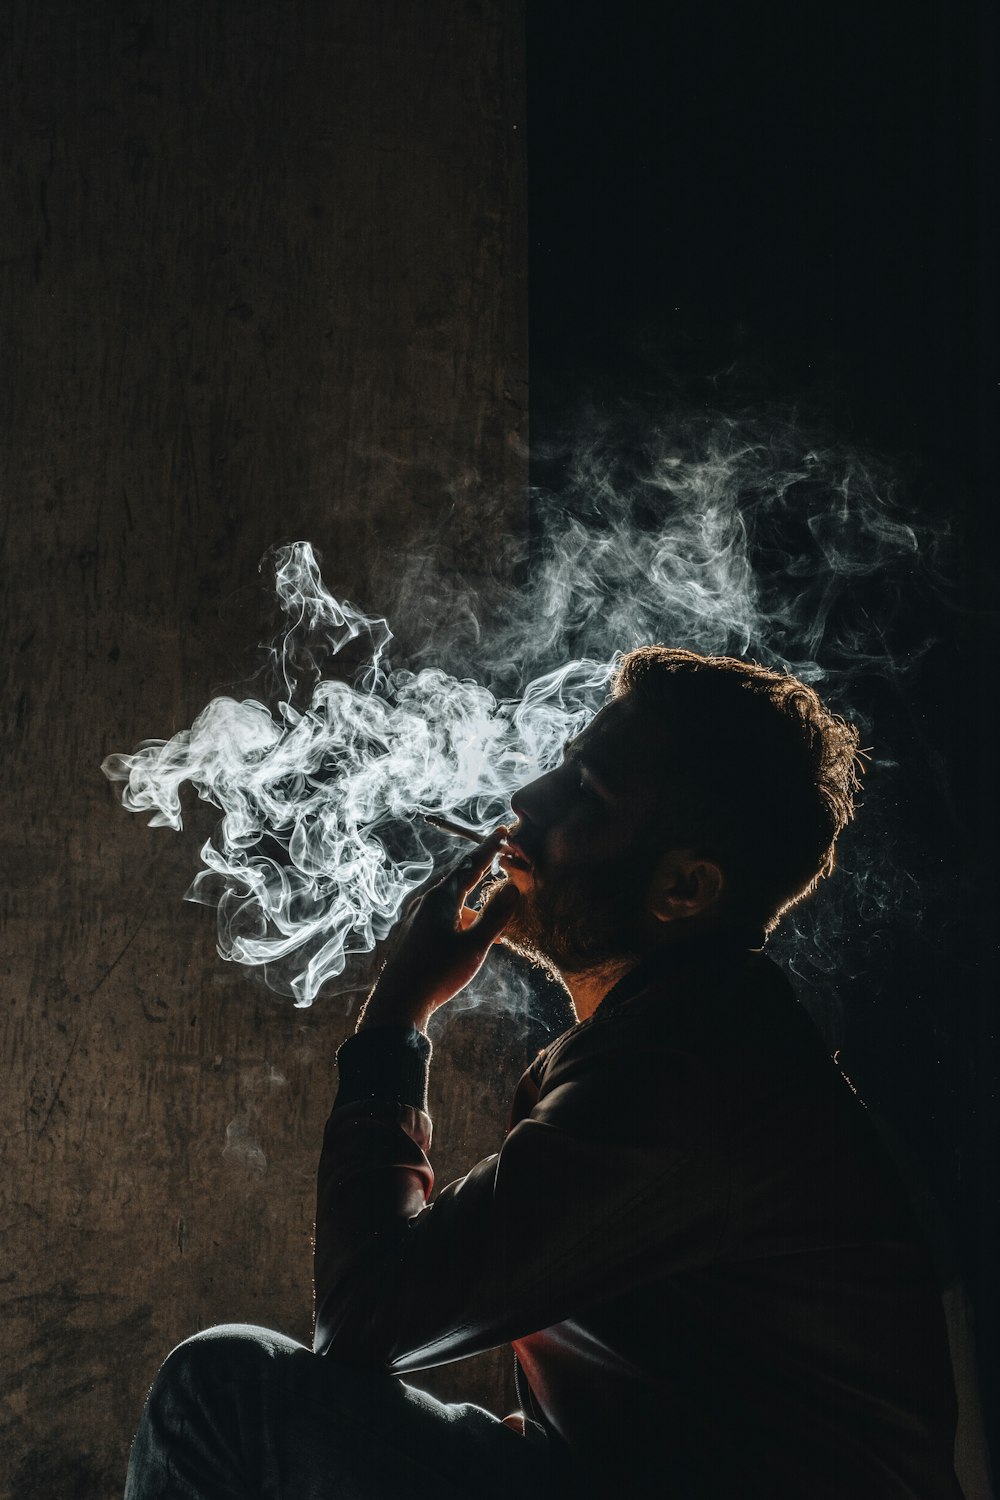 Un homme fumant une cigarette dans le noir